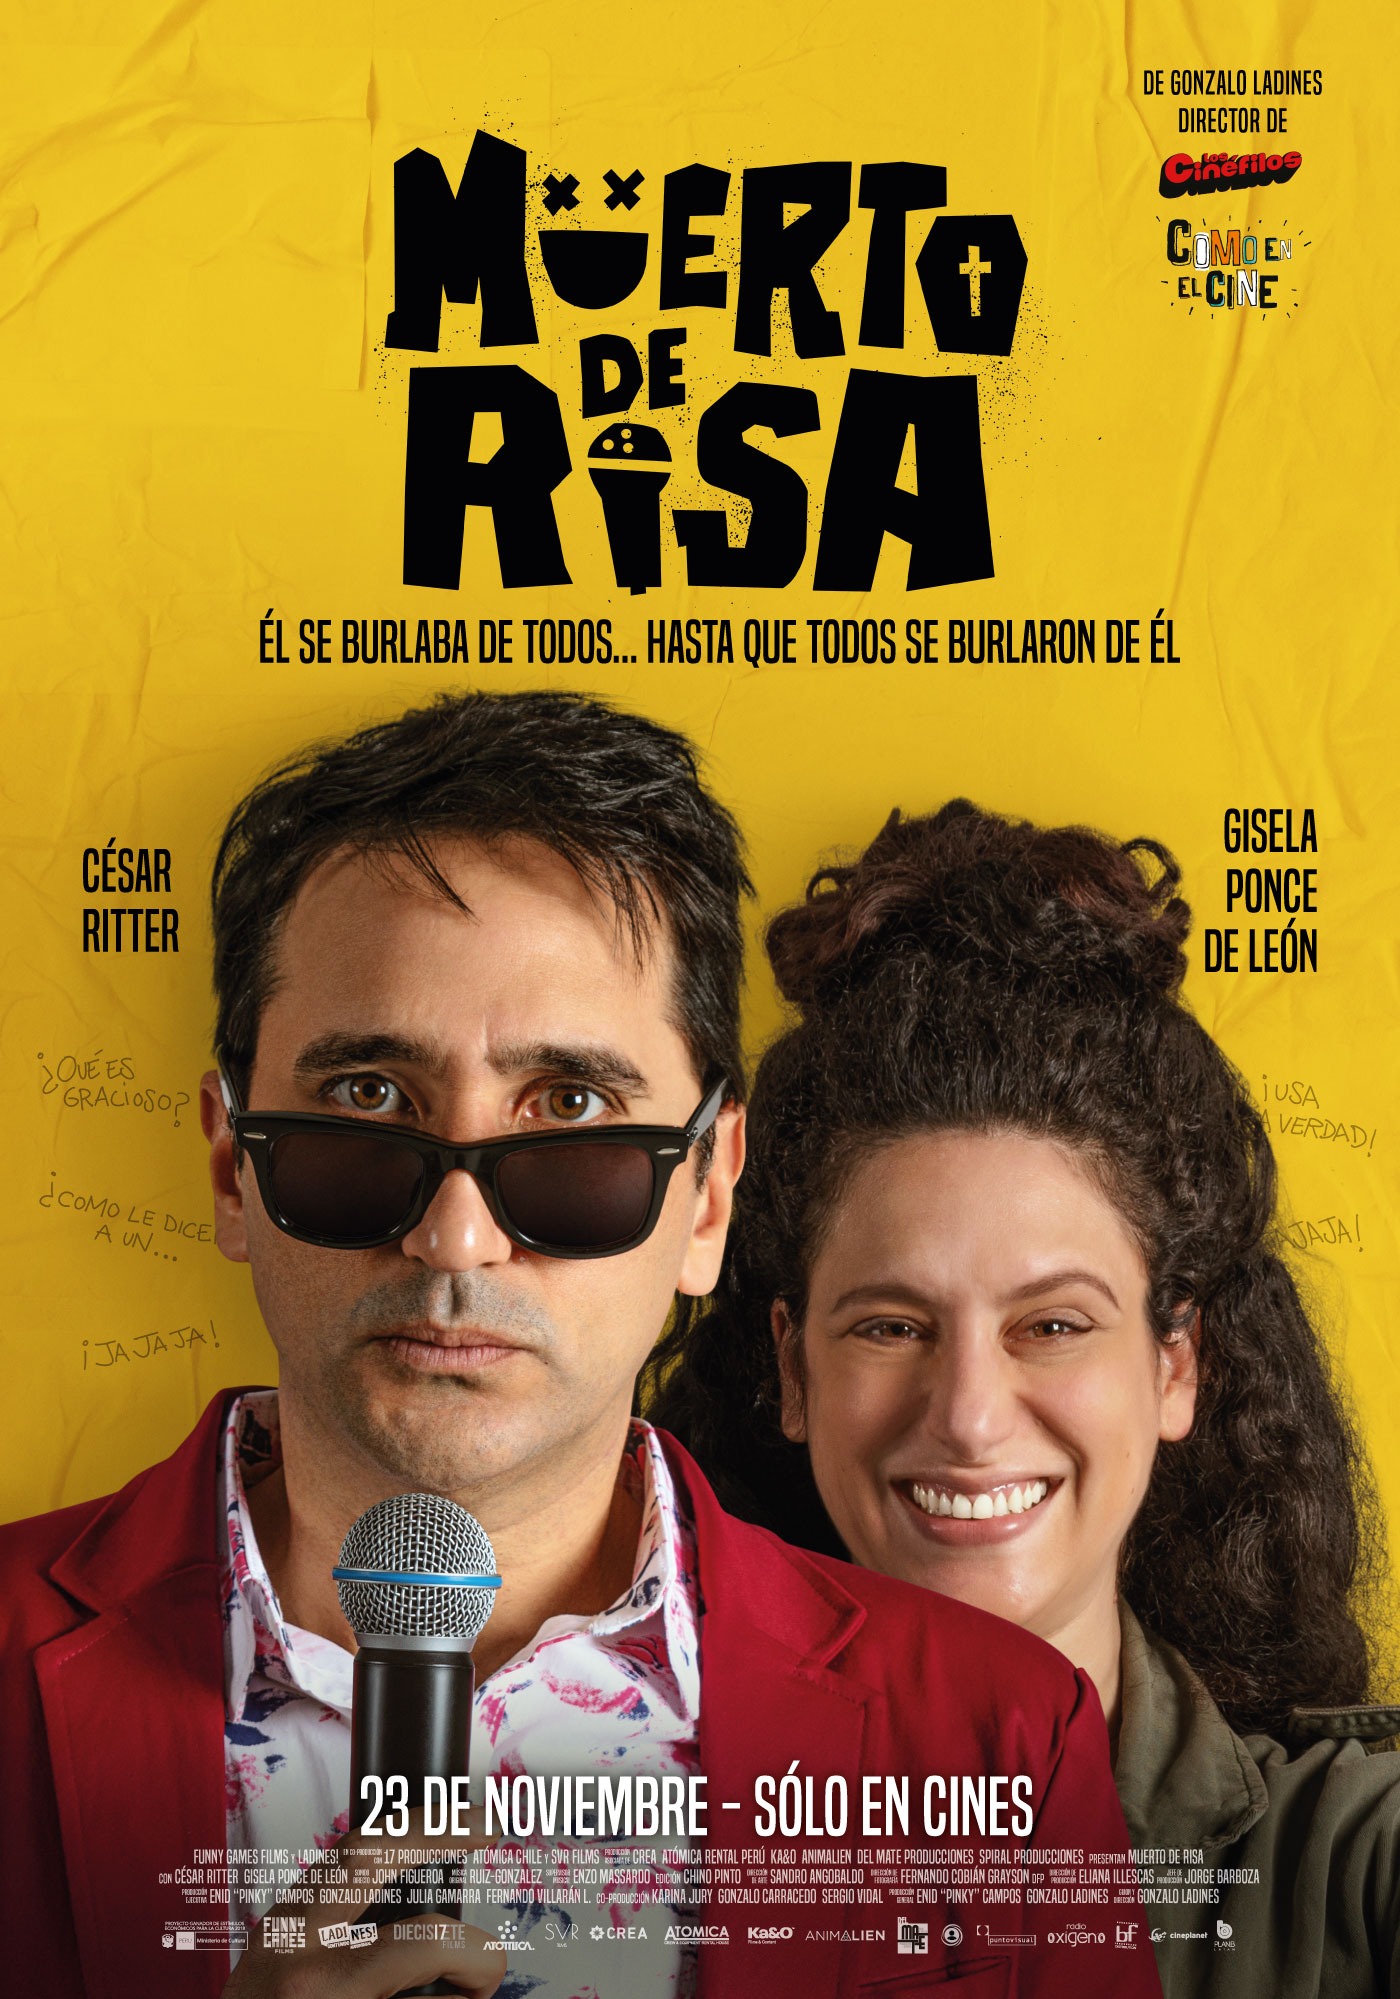 César Ritter y Gisela Ponce de León en 'Muerto de Risa' / Foto: Instagram